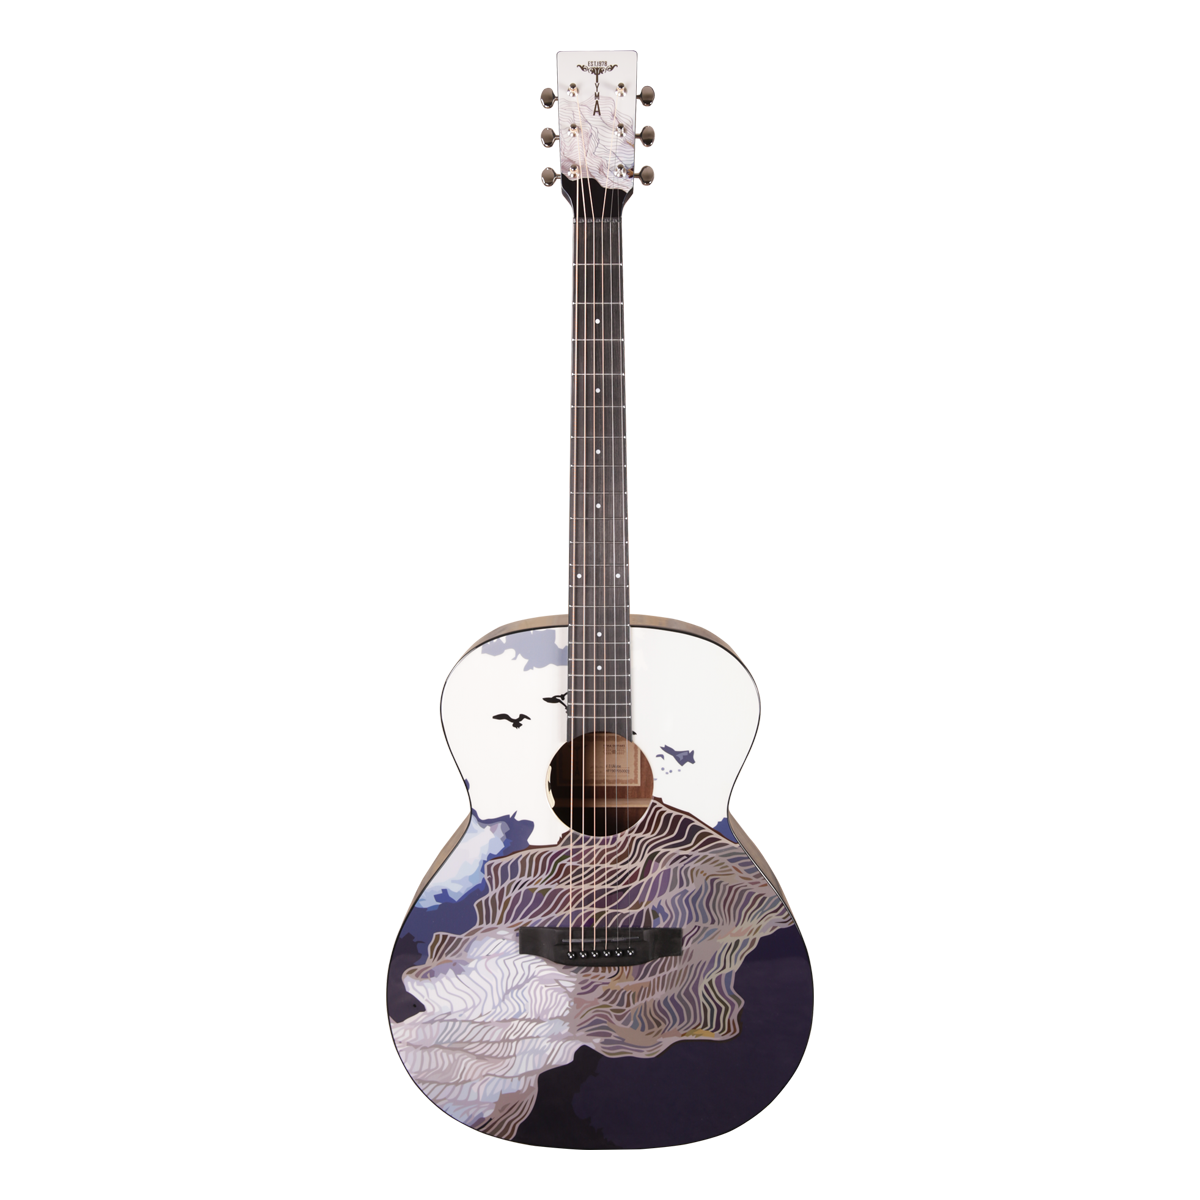 Tyma V-3 Ukiyoe электроакустическая гитара в комплекте с аксессуарами